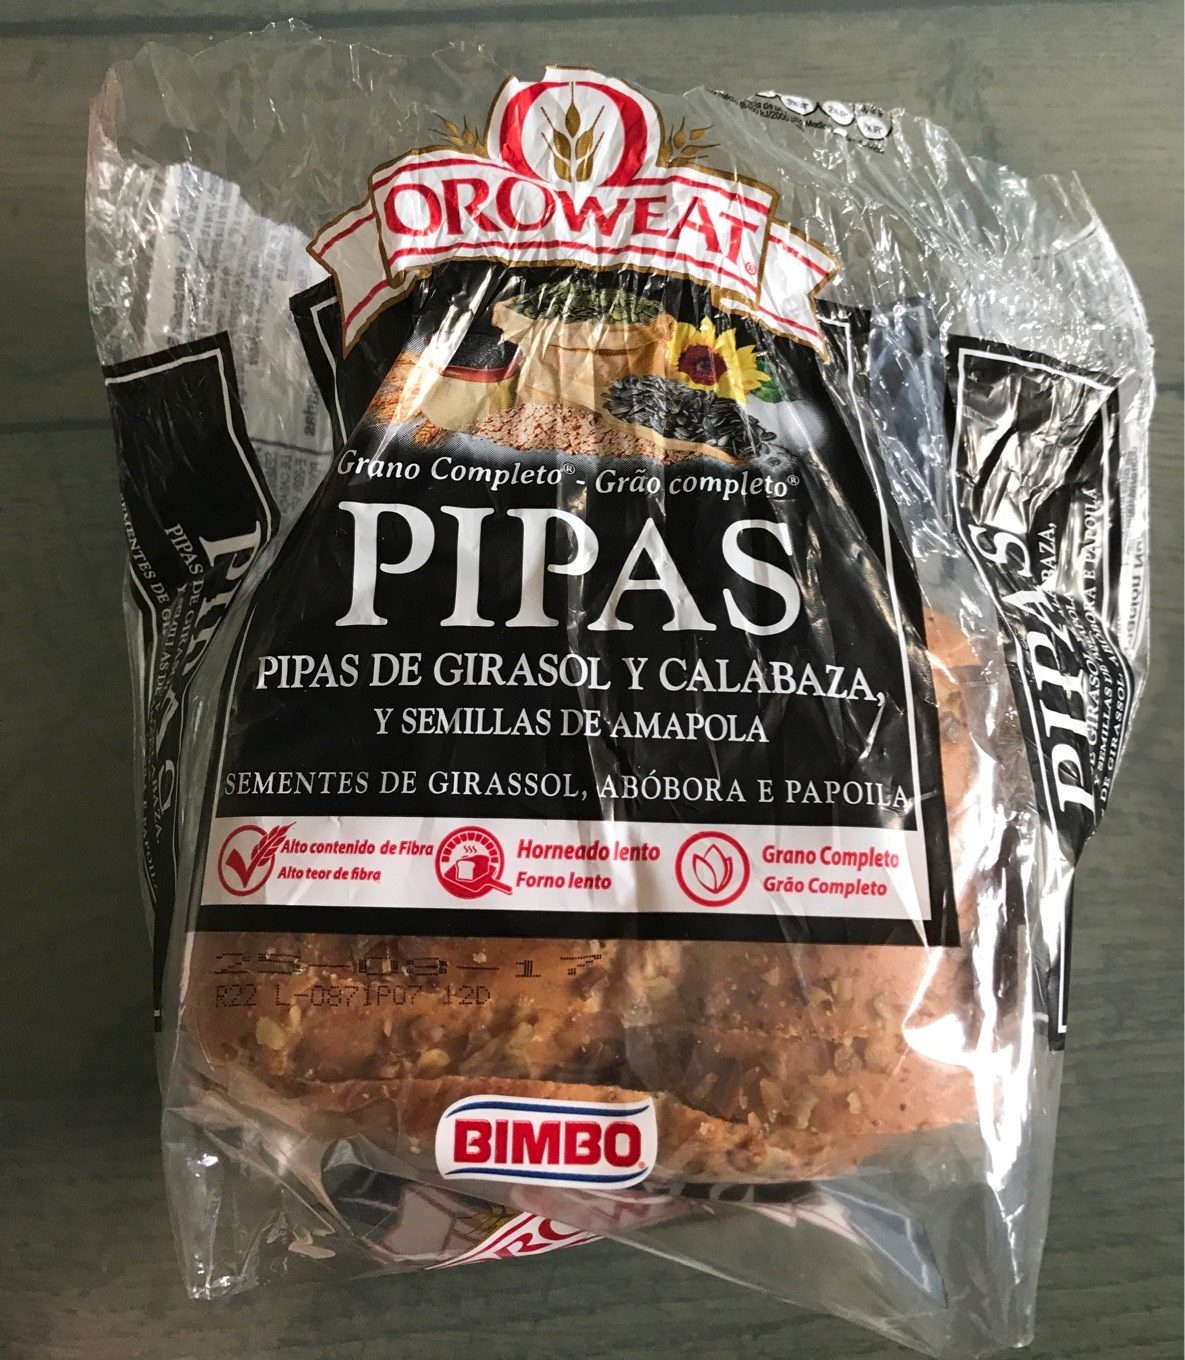 Pan de Pipas de Girasol y Calabaza Oroweat - Producto